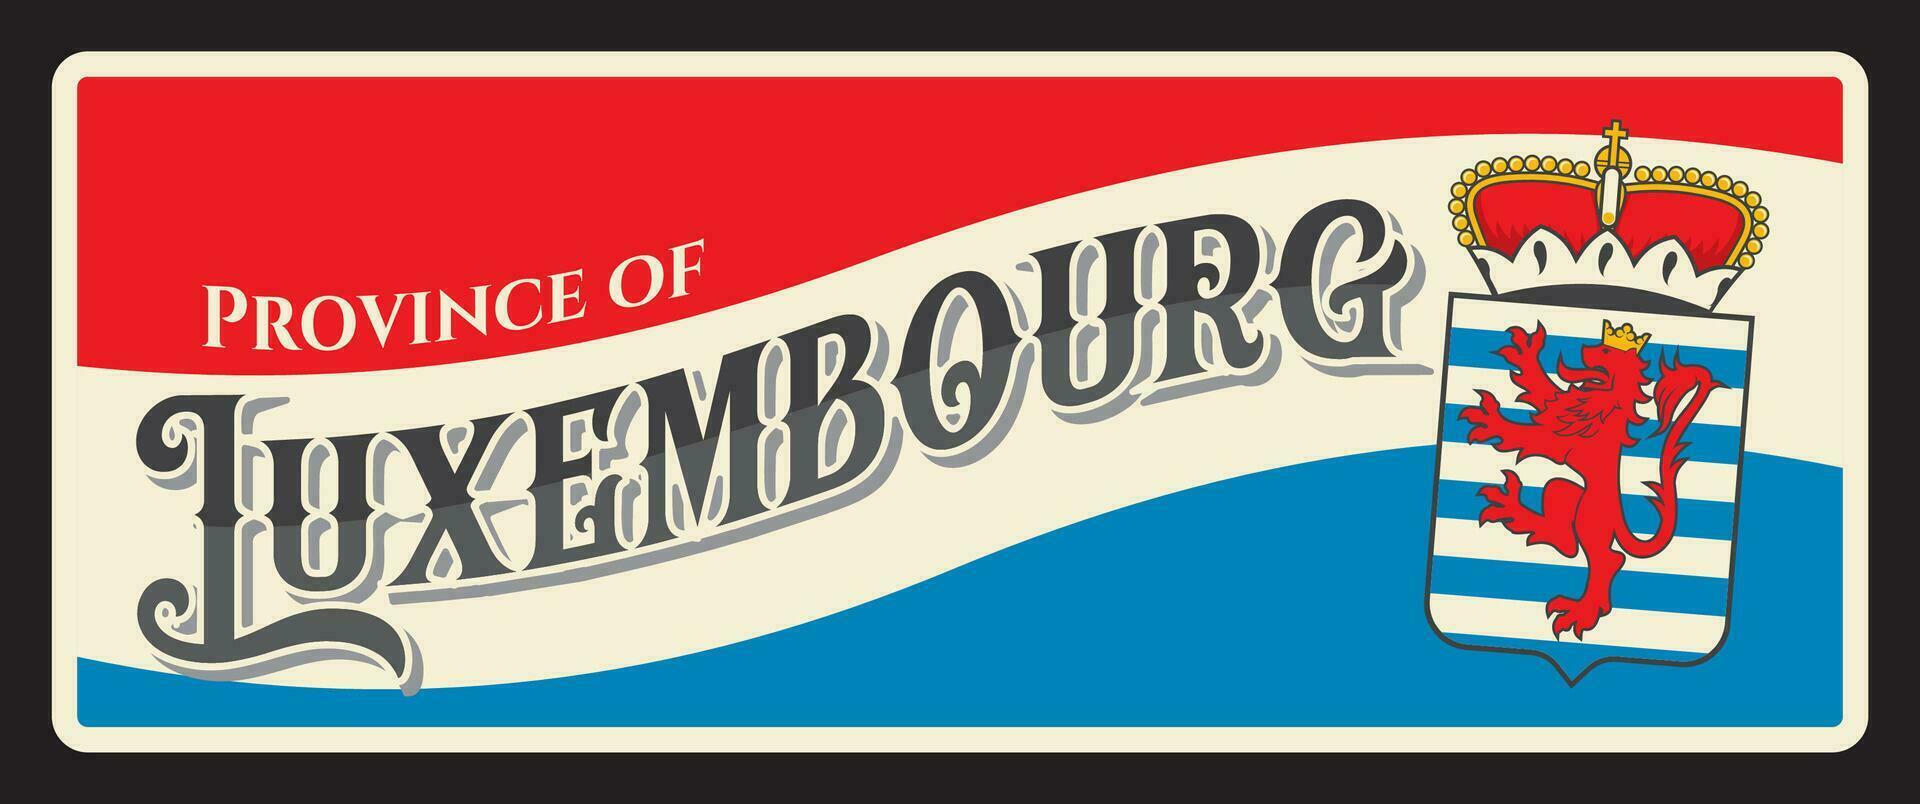 provincie van luxemburg, belgisch reizen bord vector